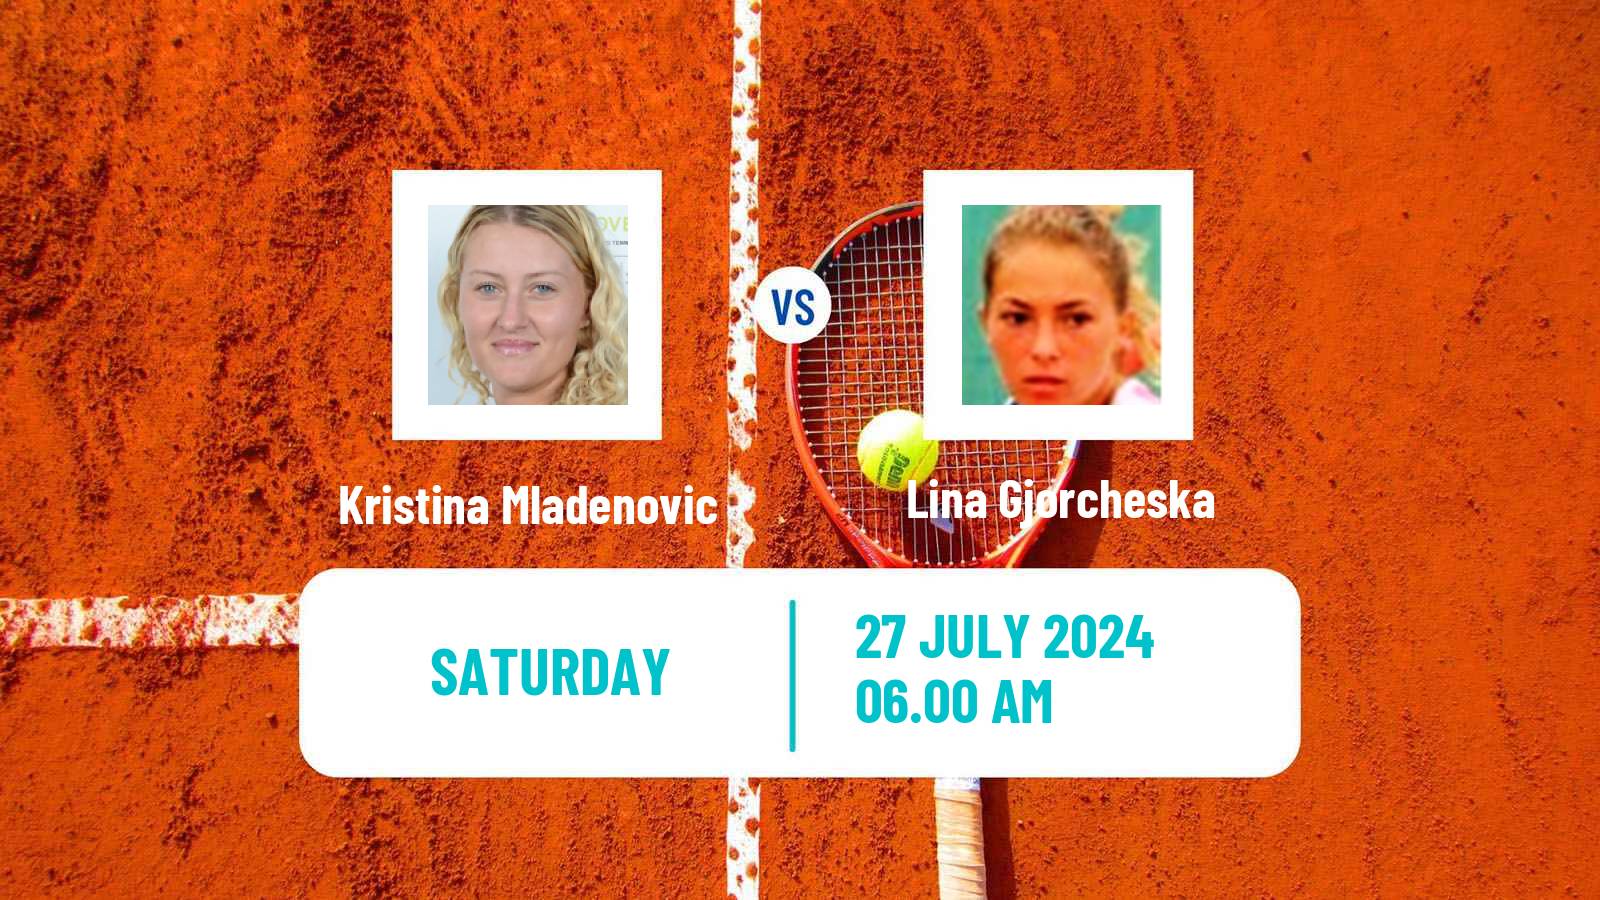 Tennis ITF W100 Figueira Da Foz Women Kristina Mladenovic - Lina Gjorcheska